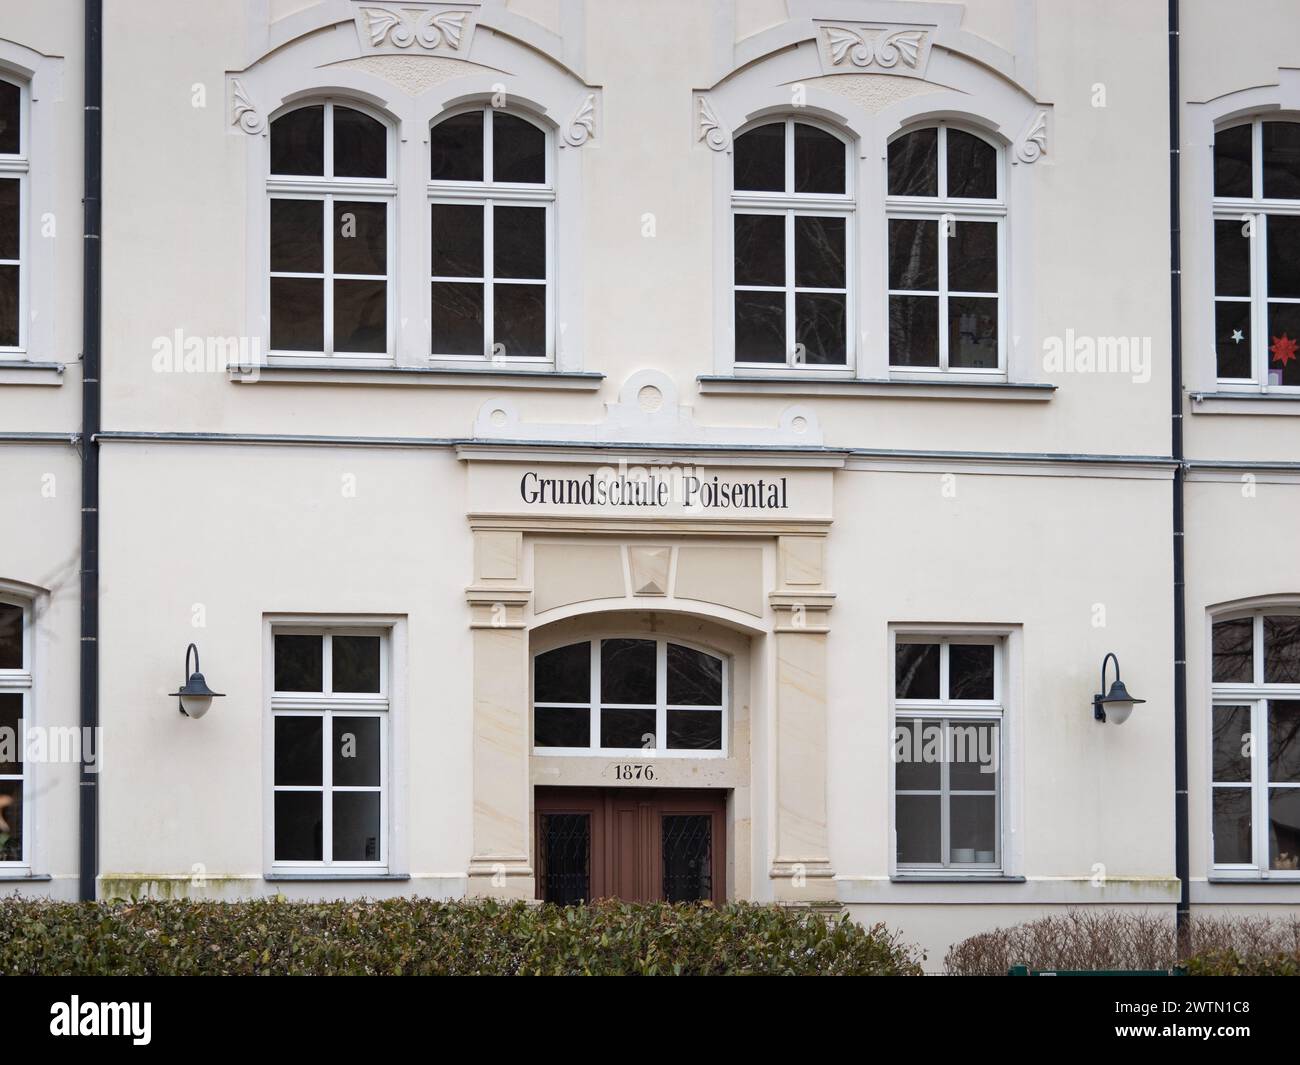 Grundschule Poisental (öffentliche Grundschule) Eingangstür der Gebäudeaußenwand. Deutsche Bildungseinrichtung in der kleinen Stadt Freital in Sachsen. Stockfoto